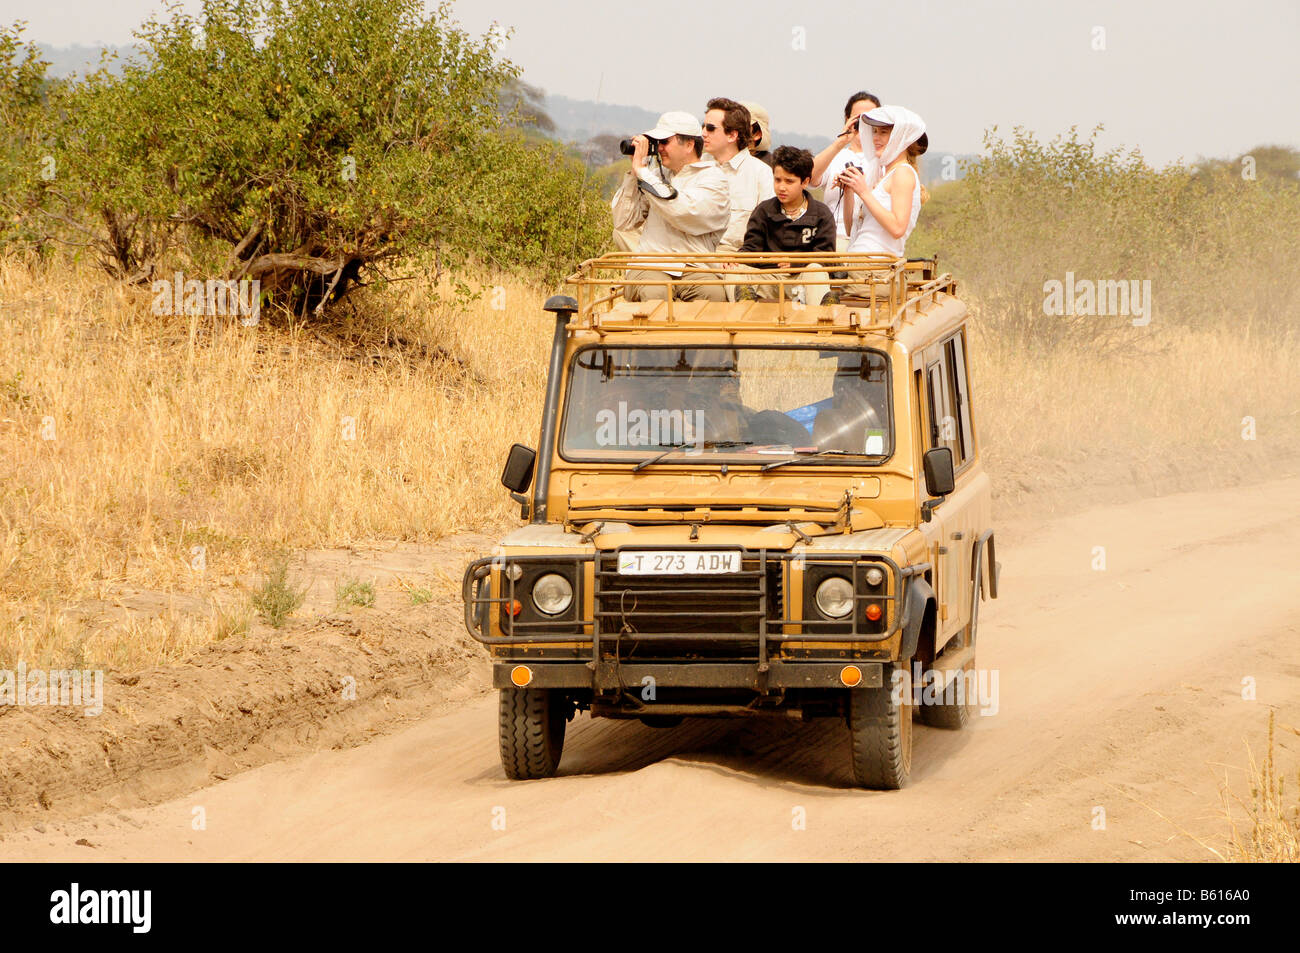 Los turistas de safari en un vehículo de tracción en las cuatro ruedas, Tarangire-National Park, Tanzania, África Foto de stock